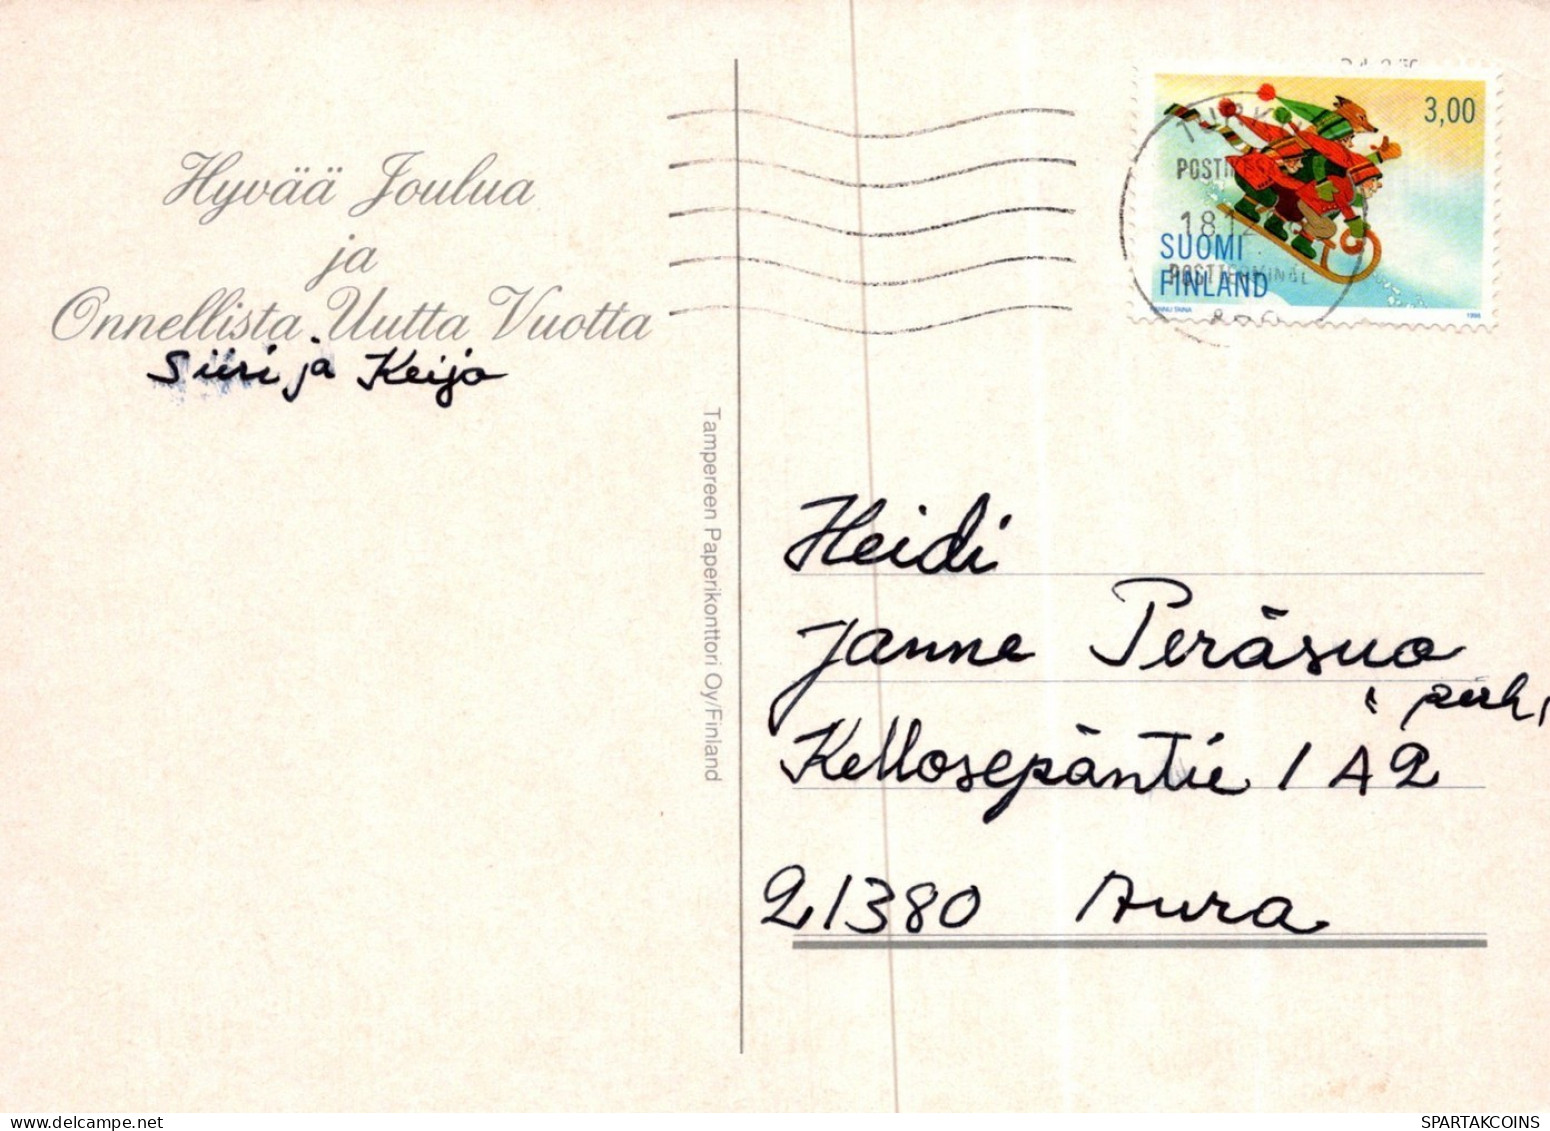 WEIHNACHTSMANN SANTA CLAUS WEIHNACHTSFERIEN Vintage Postkarte CPSM #PAK155.DE - Santa Claus